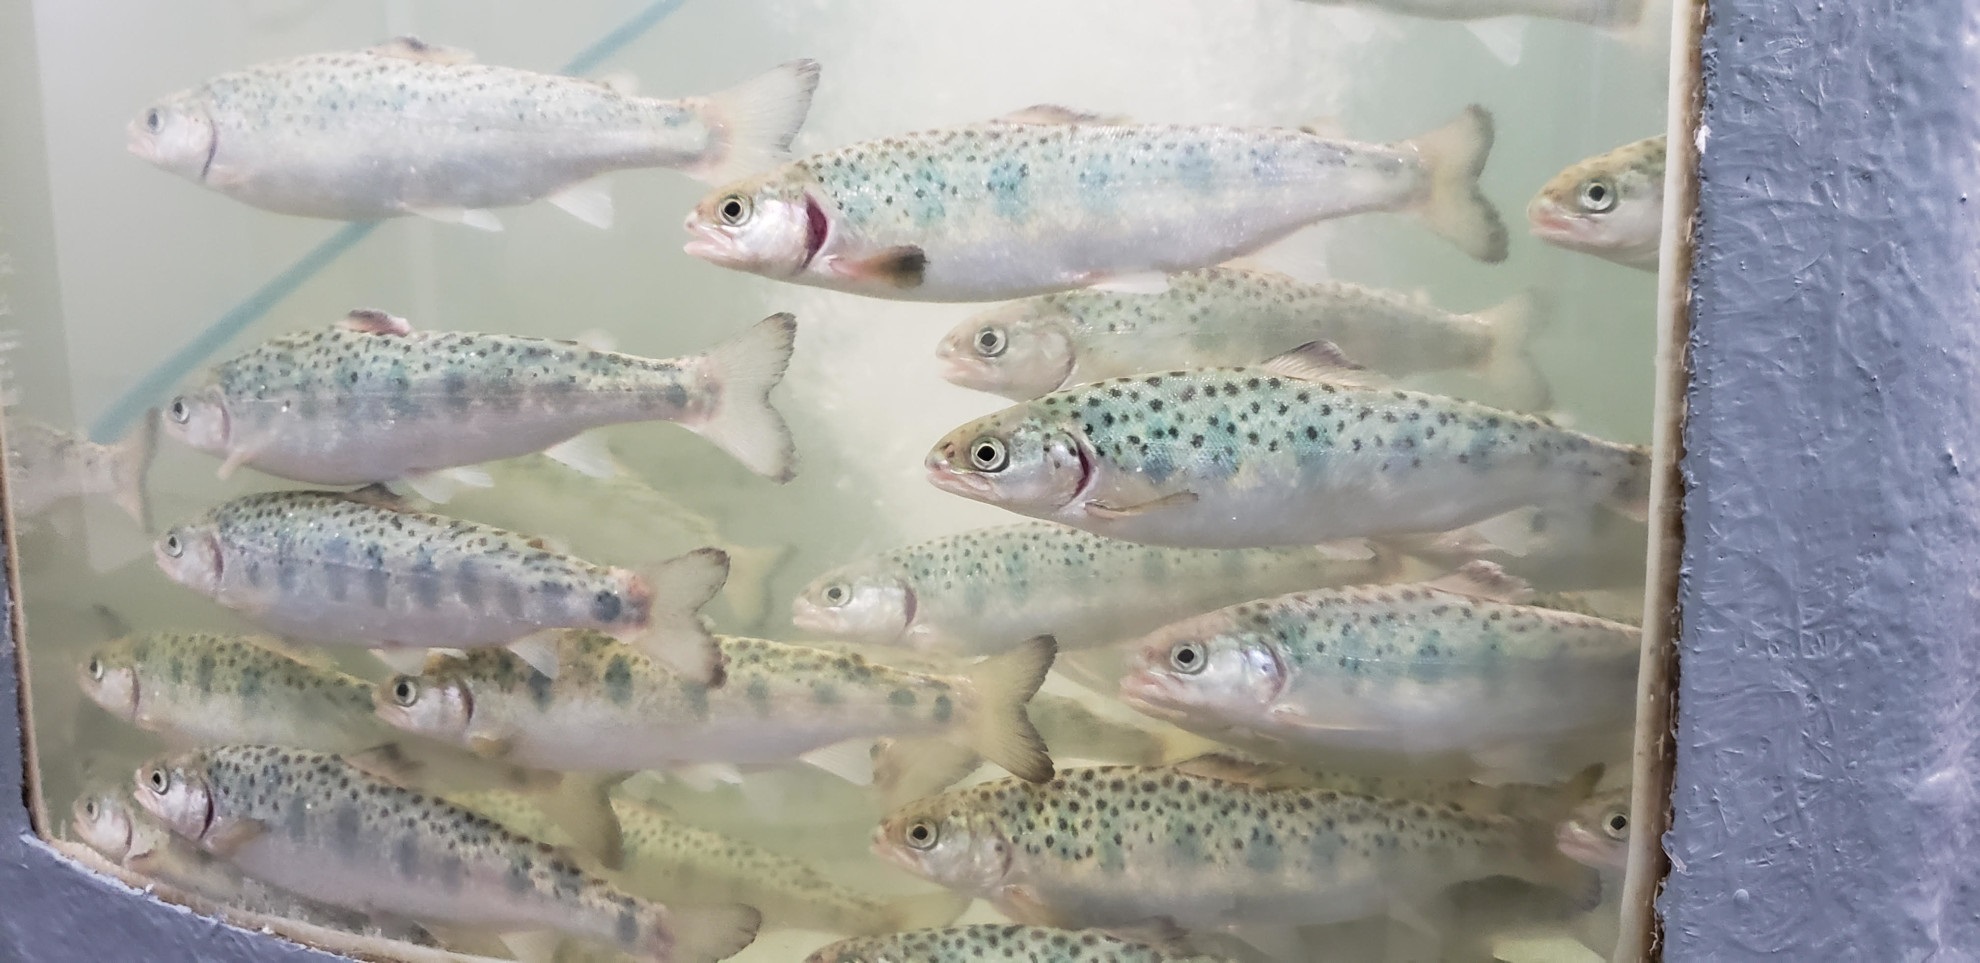 Describen diversidad y riqueza de la microbiota intestinal del salmón Atlántico durante transferencia a agua de mar